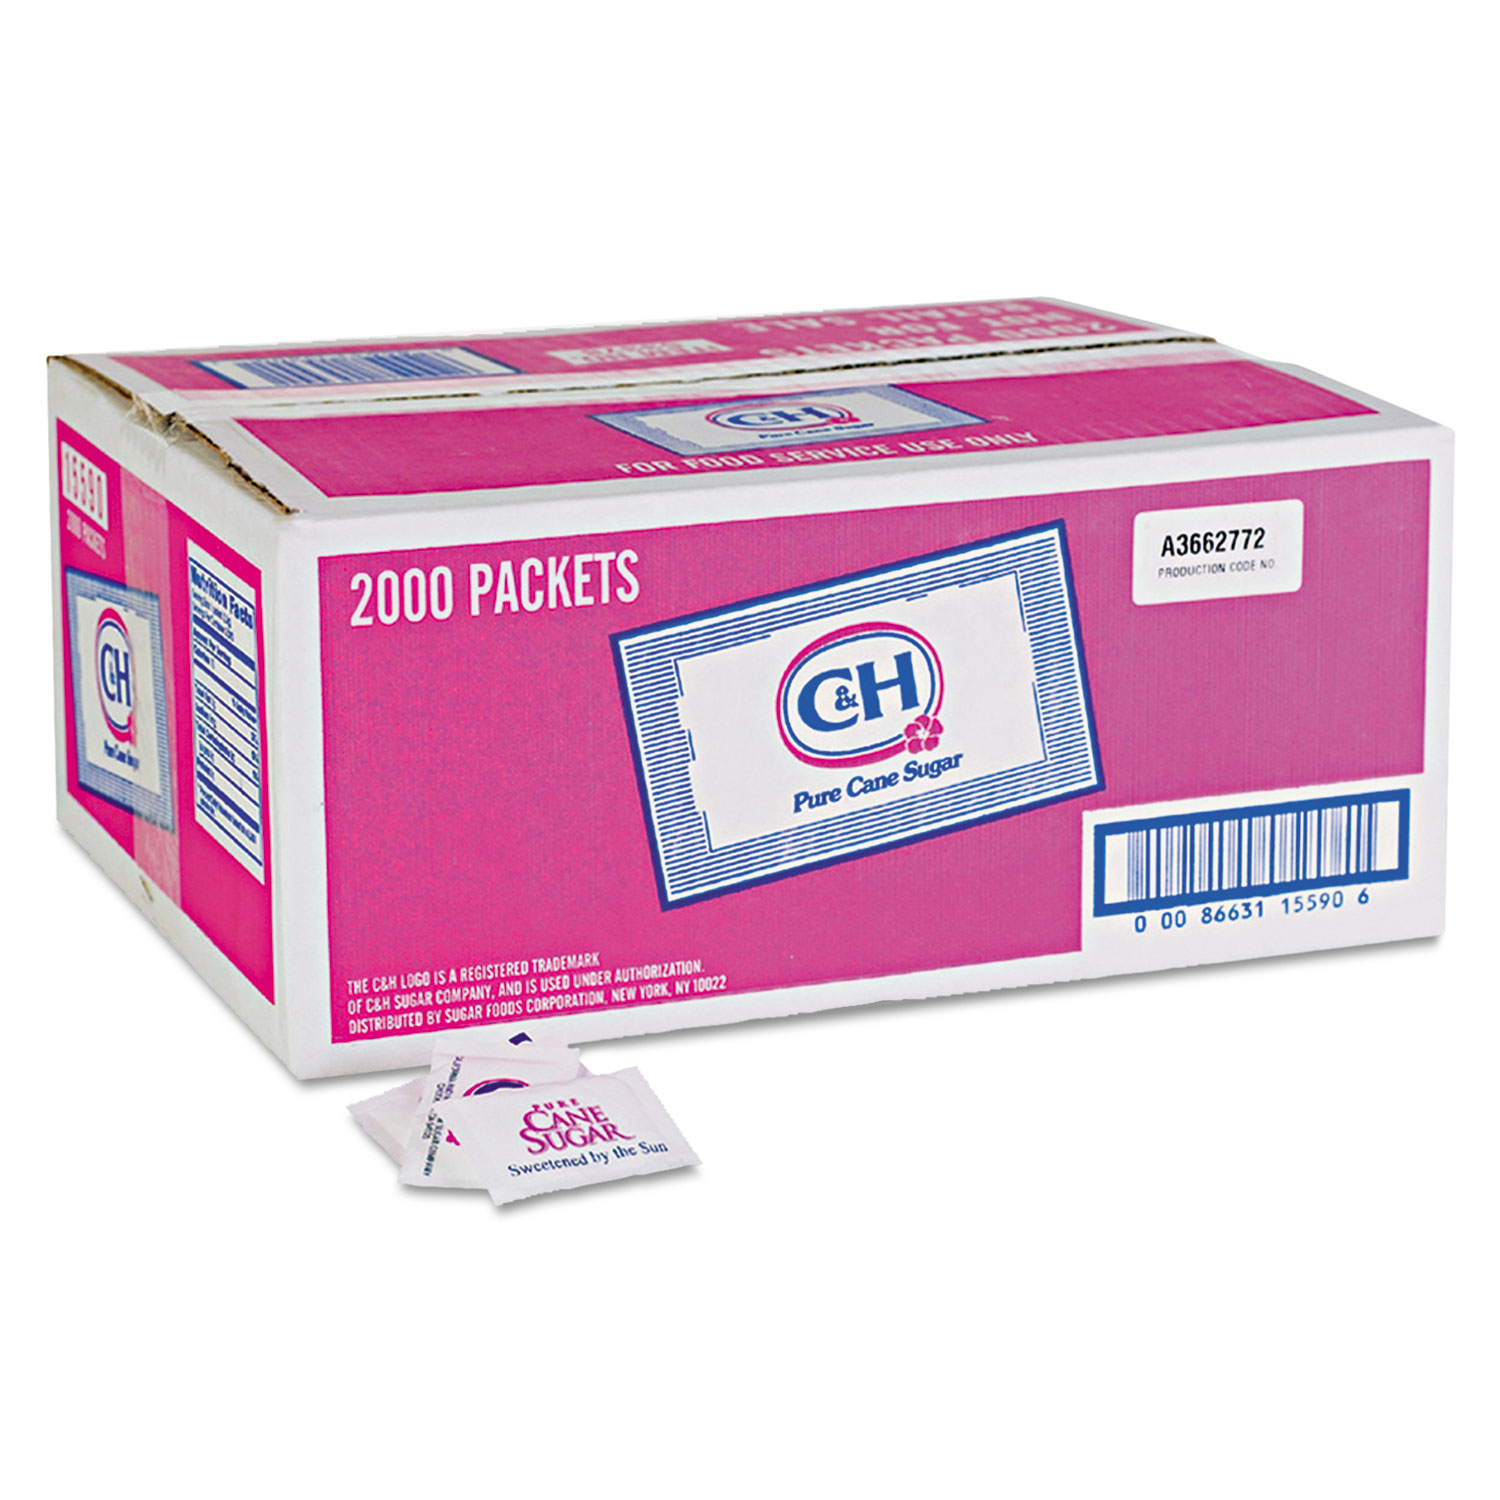 Granulated Sugar Packets, .10 oz, 2000/Carton